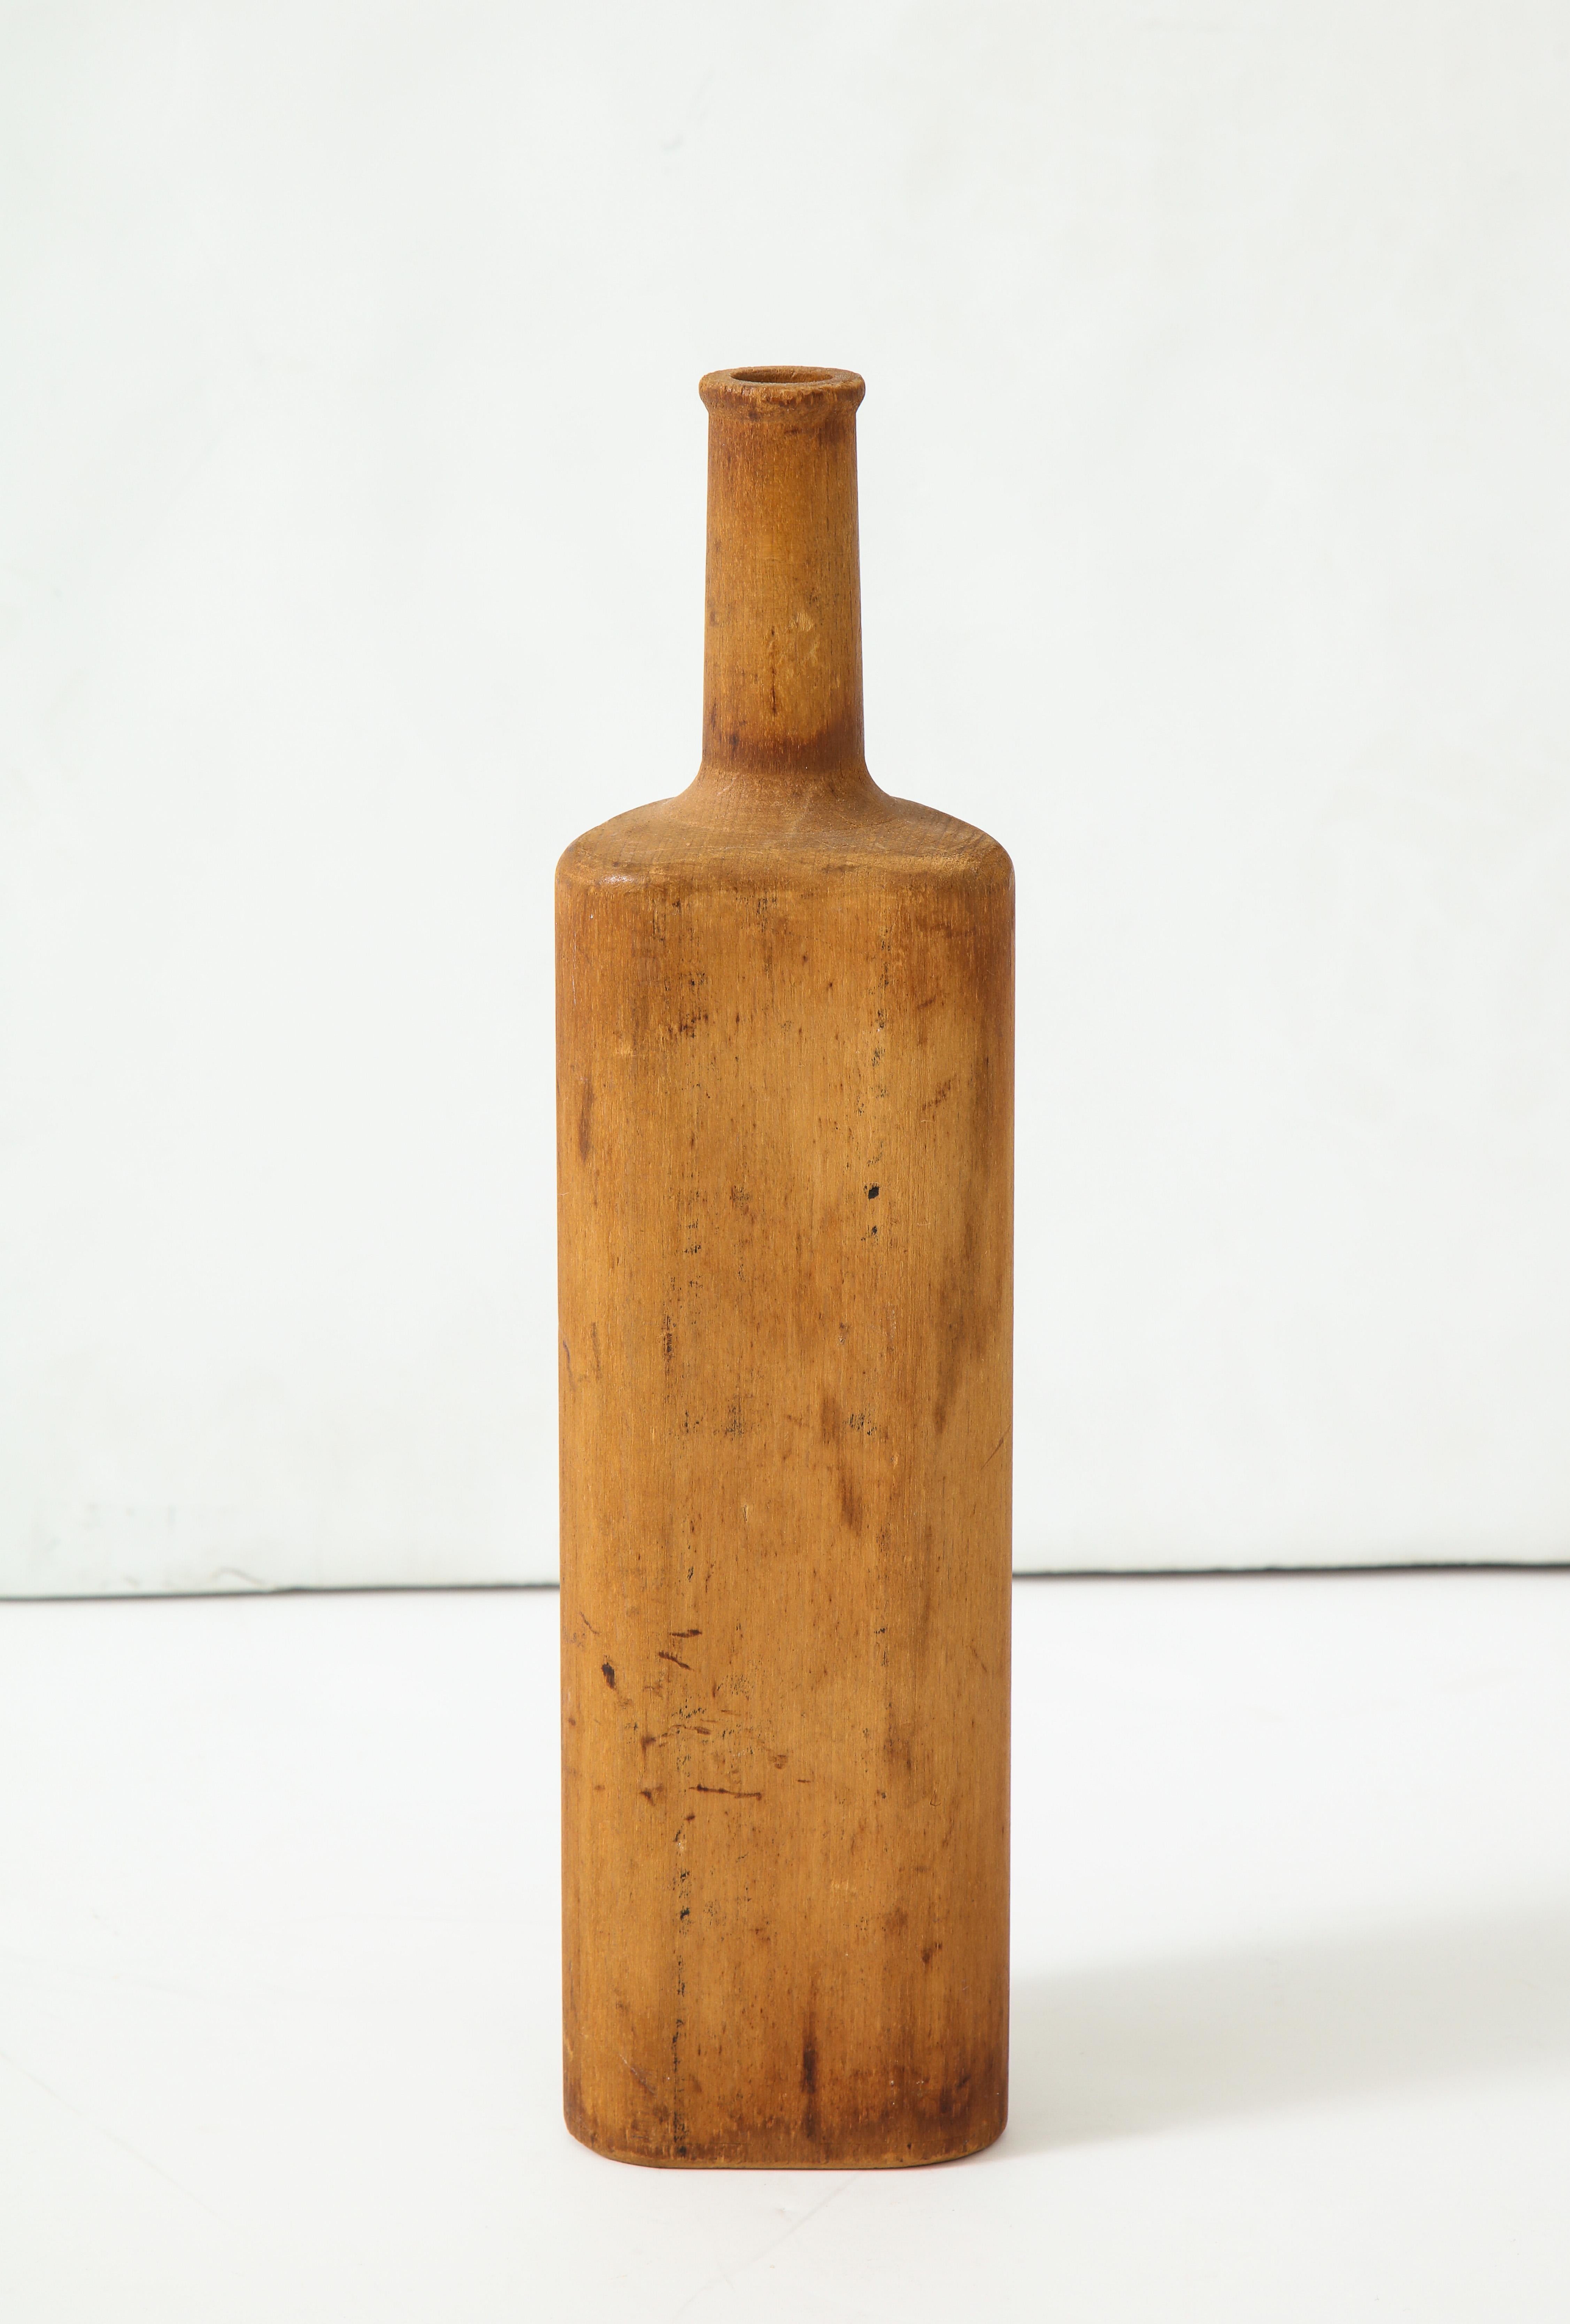 französische Form für Glasflasche aus dem 19. und frühen 20. Jahrhundert, handgedreht. Schöne Patina.